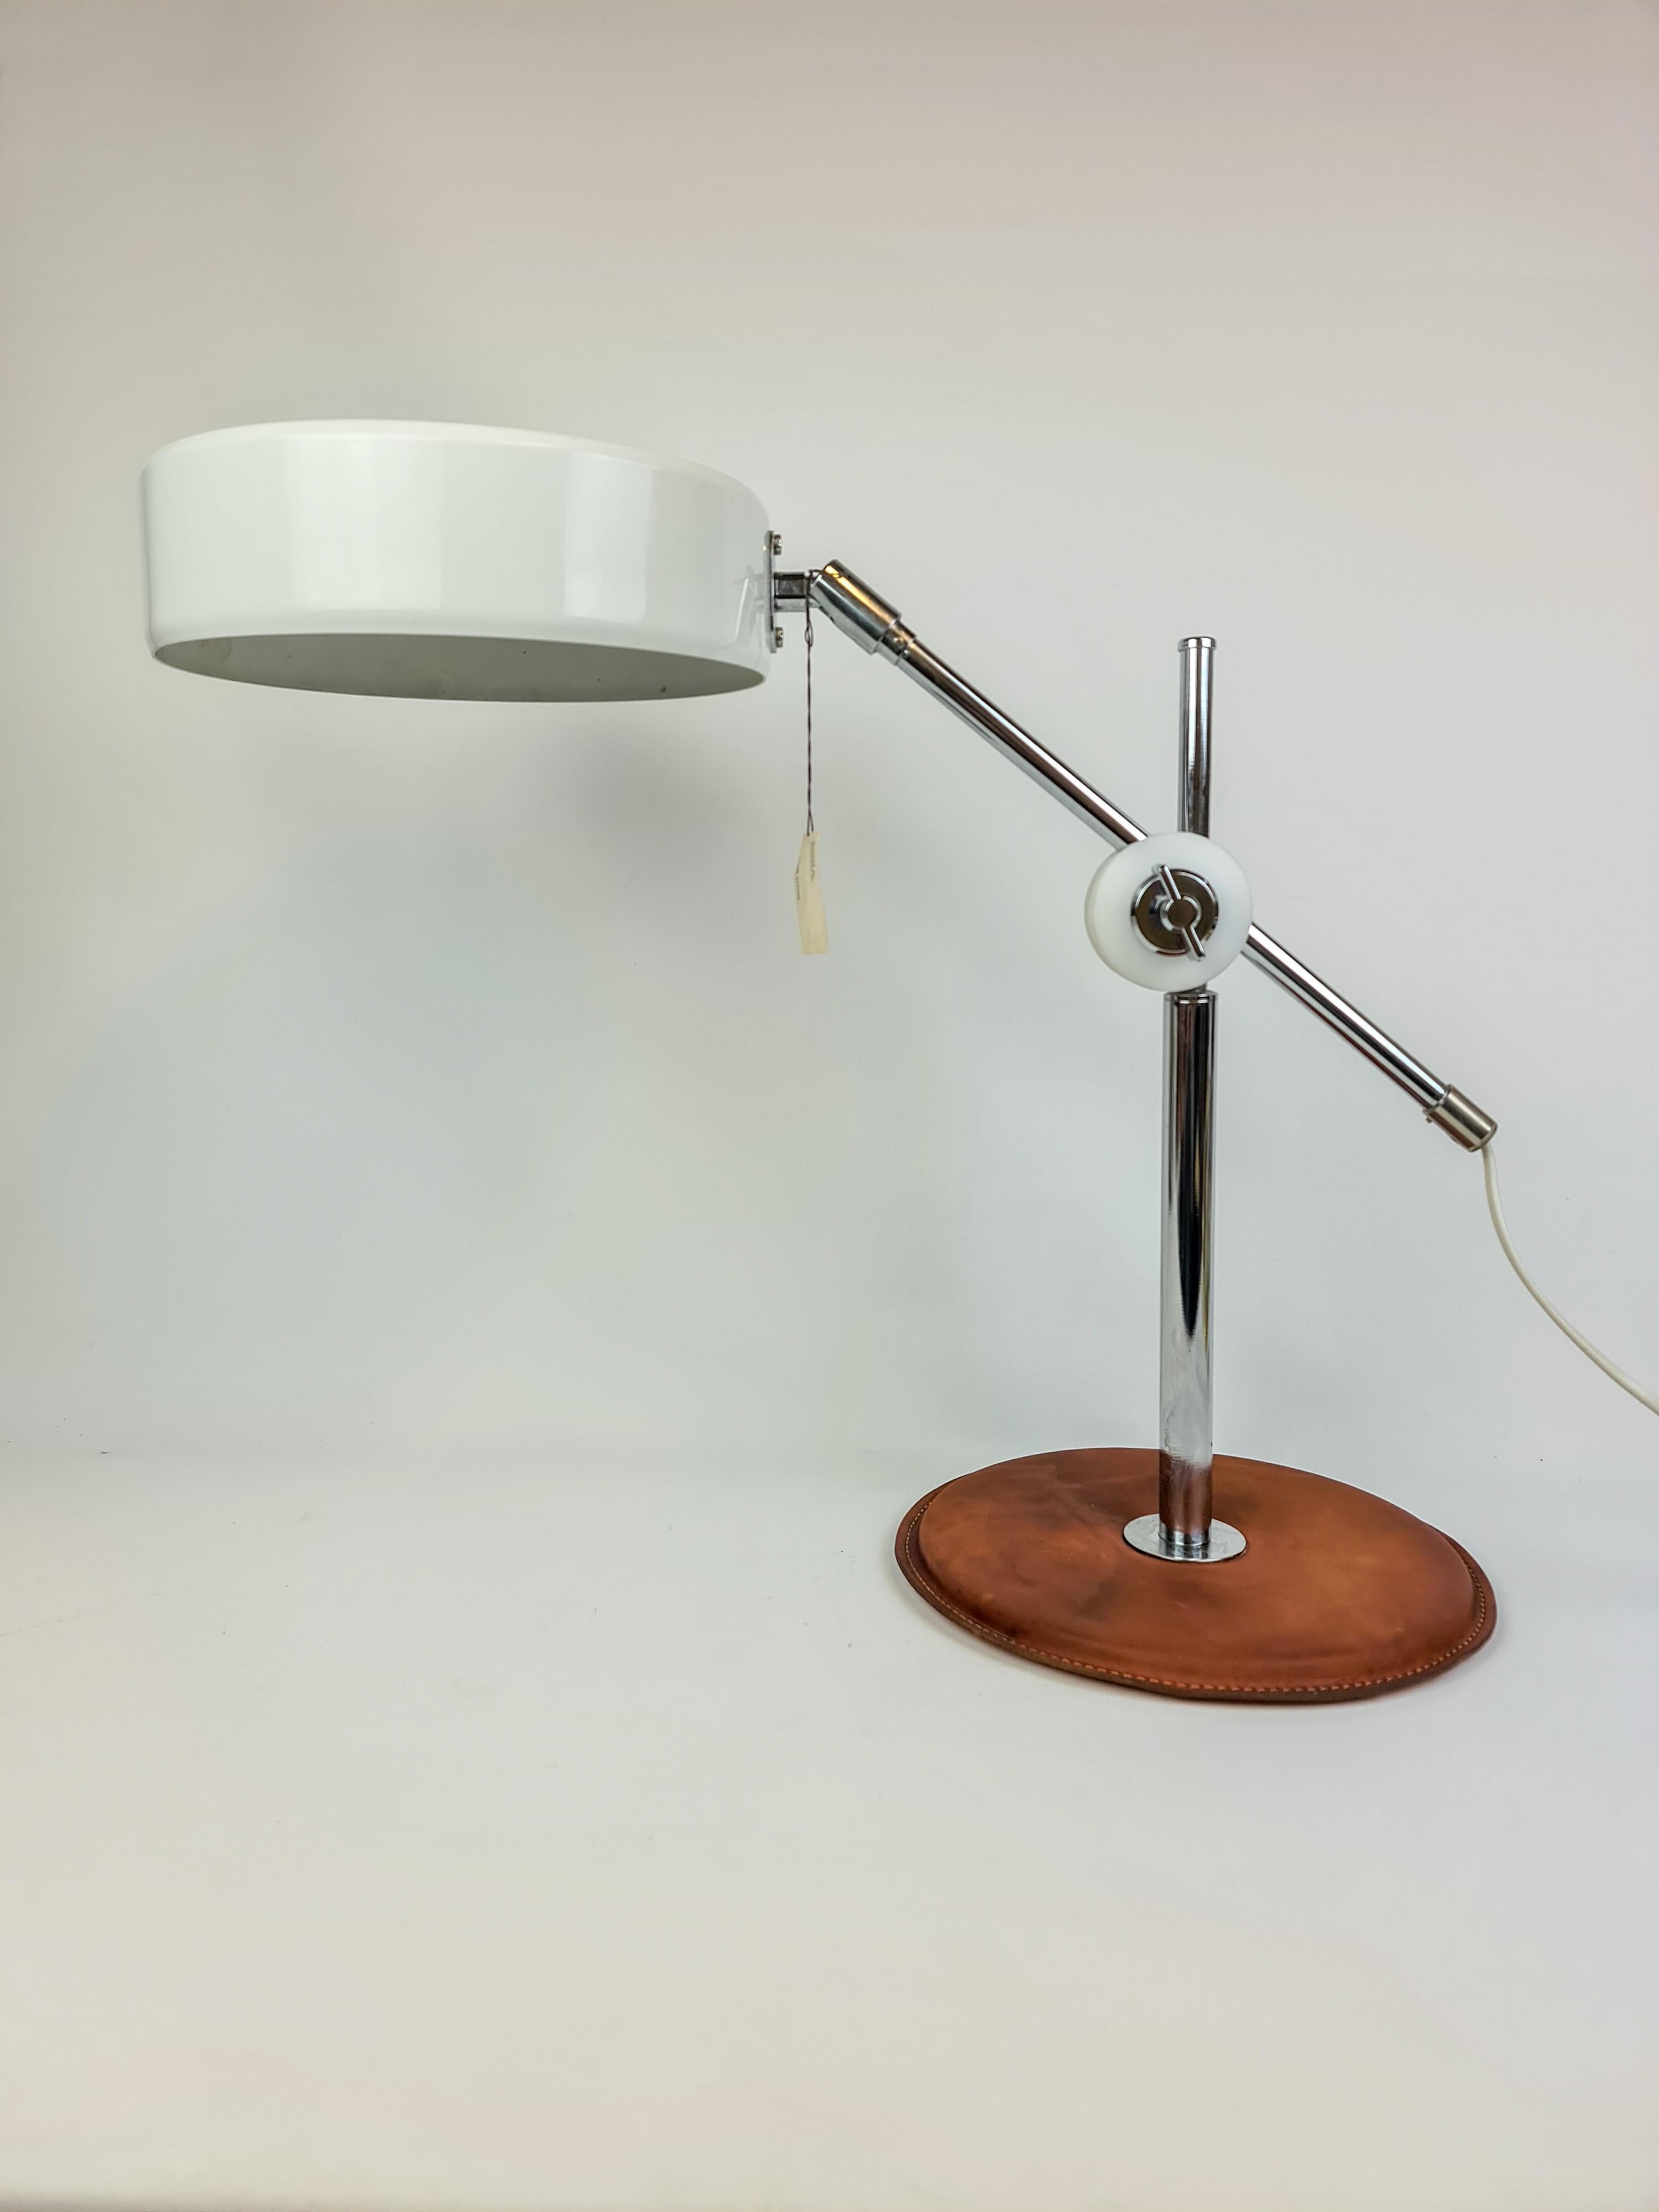 Cette lampe de table Simris a été conçue par Anders Pehrson pour Atelje Lyjktan en Suède au début des années 1970. Il possède une belle base en cuir brun patiné et des détails chromés sur la lampe et l'abat-jour blanc en métal. 

Entièrement